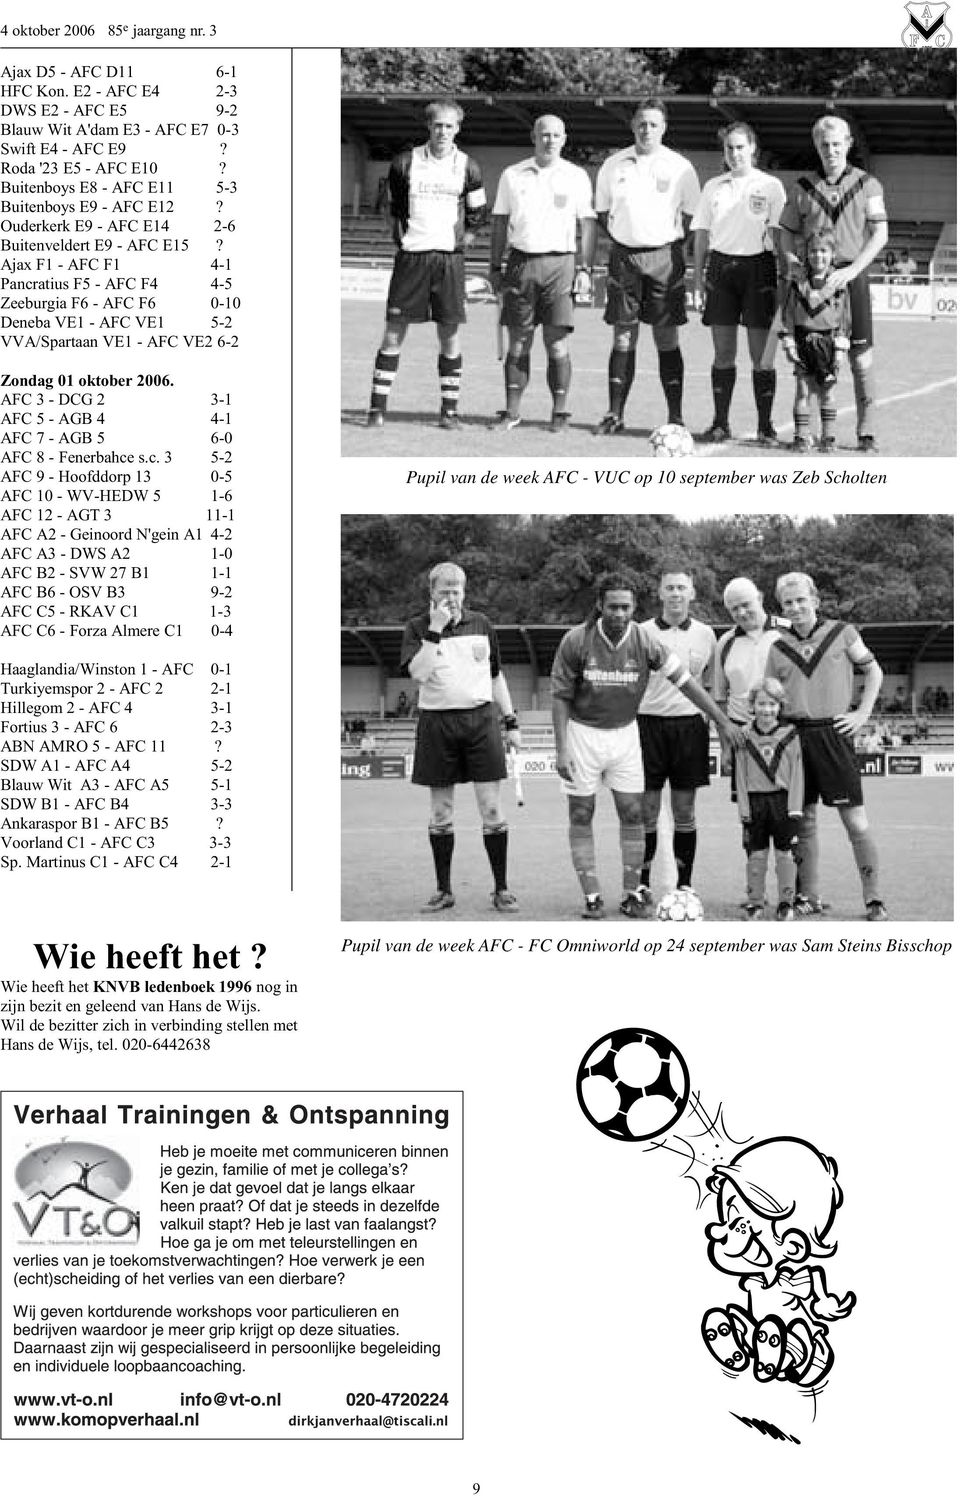 Ajax F1 - AFC F1 4-1 Pancratius F5 - AFC F4 4-5 Zeeburgia F6 - AFC F6 0-10 Deneba VE1 - AFC VE1 5-2 VVA/Spartaan VE1 - AFC VE2 6-2 Zondag 01 oktober 2006.